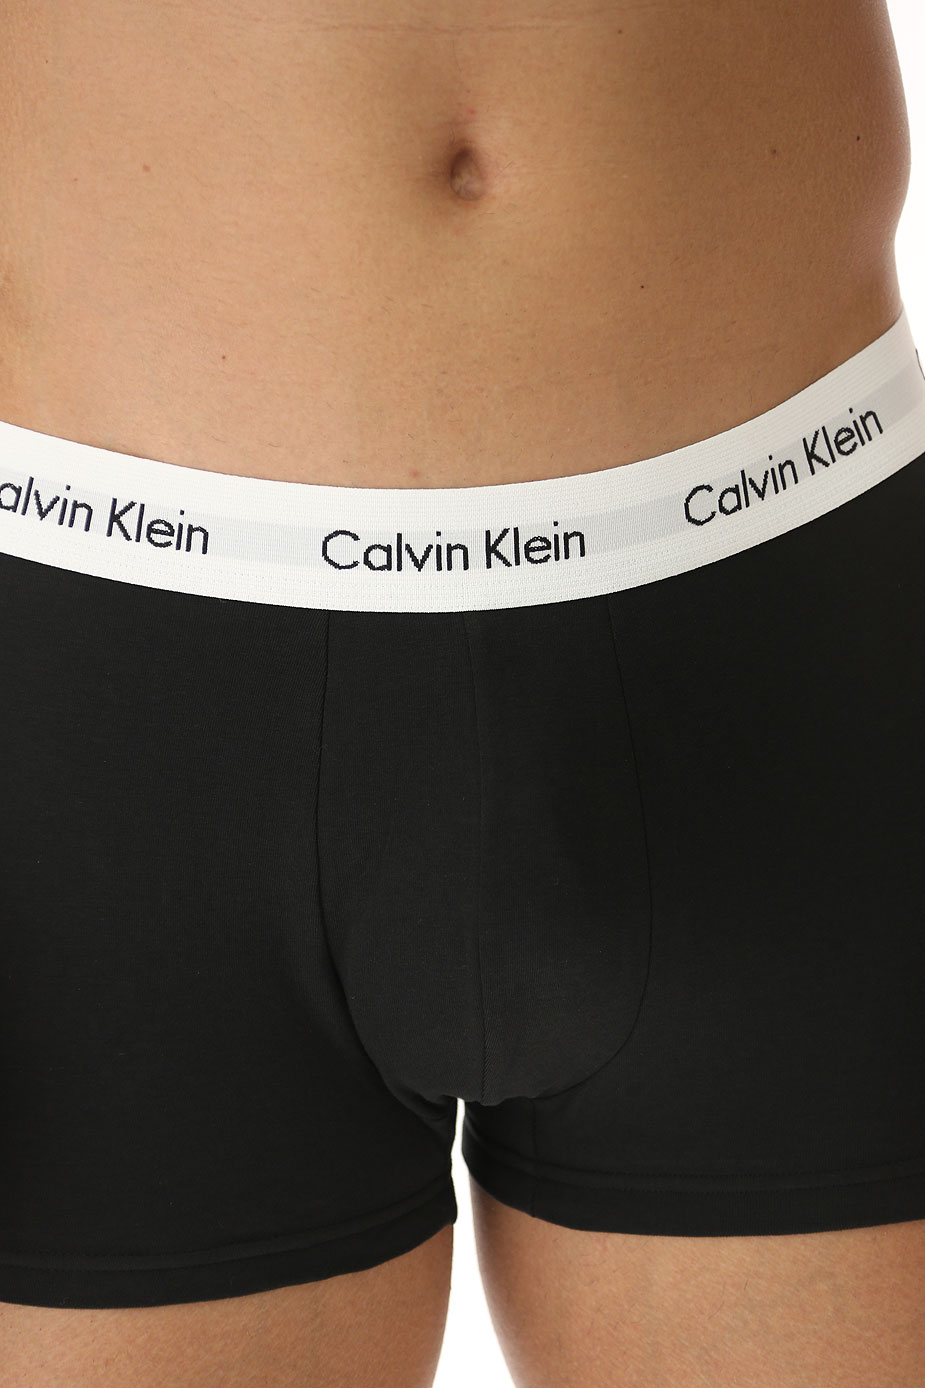 Hombre Tienda Online Calvin Klein Ropa Interior A Precio